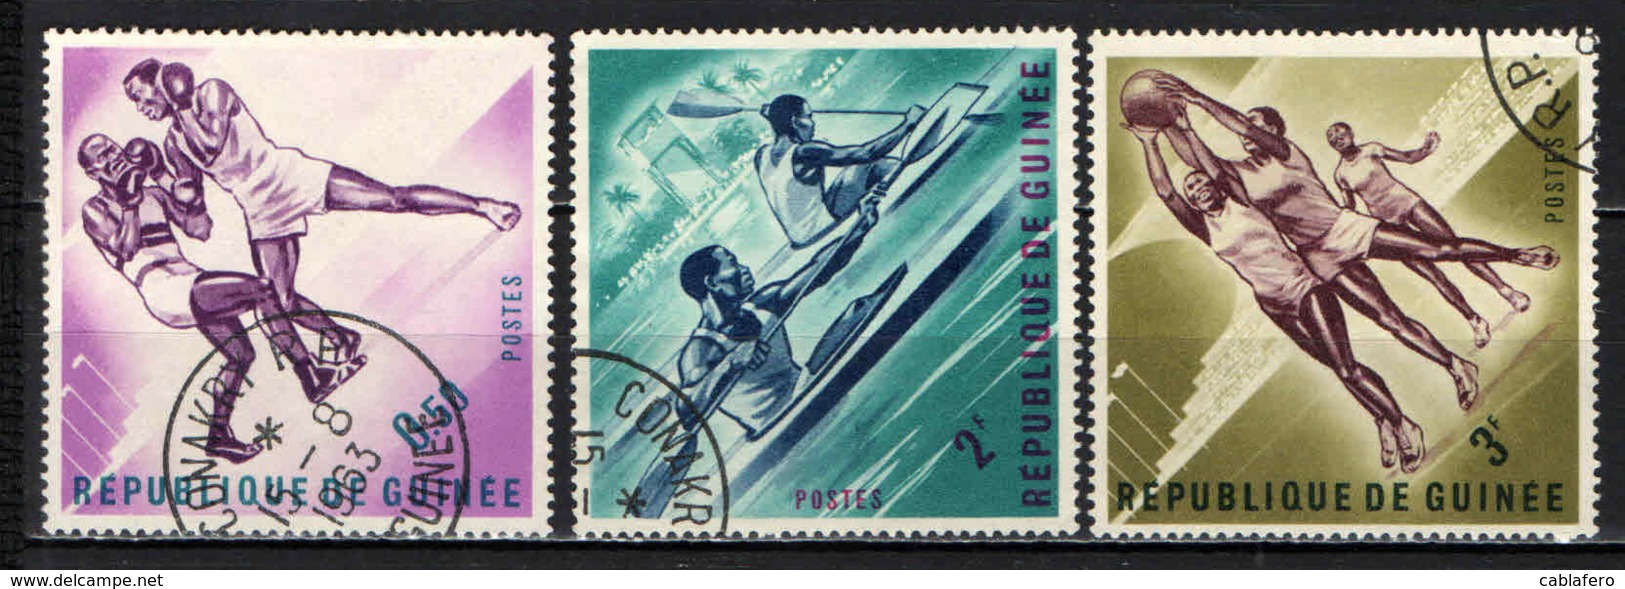 GUINEA - 1963 - VERSO LE OLIMPIADI - USATI - Guinea (1958-...)